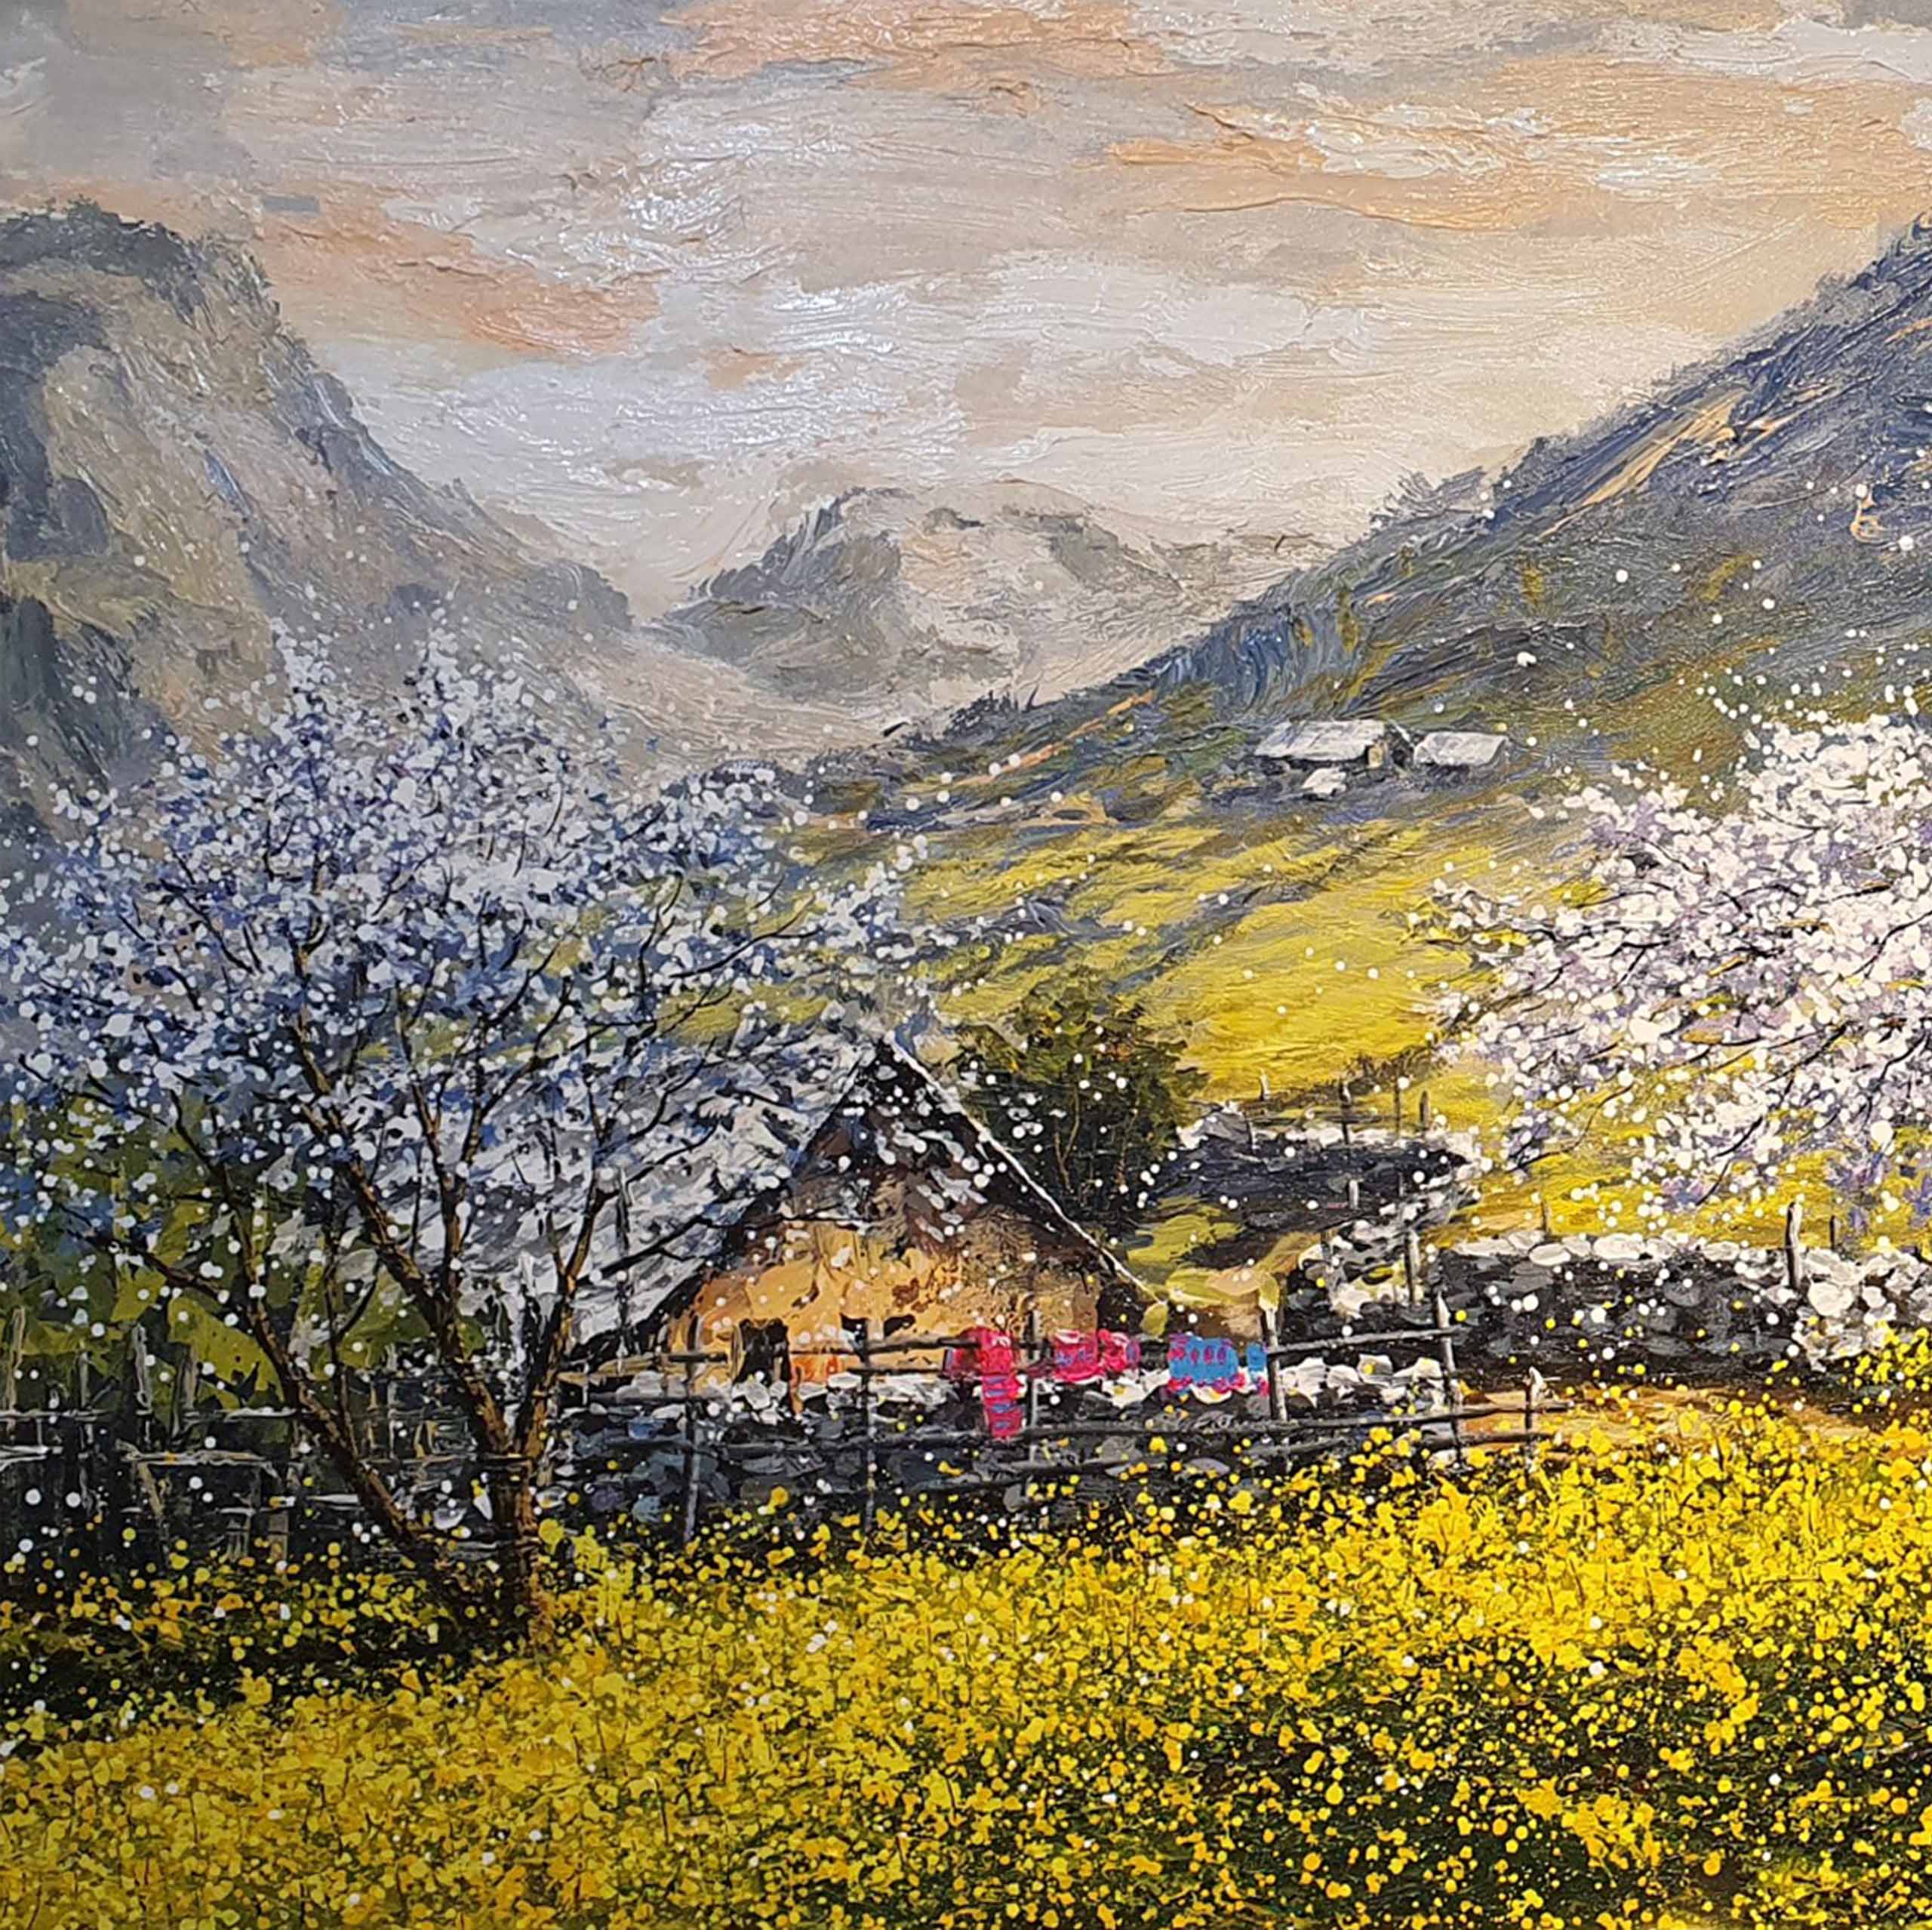 Tranh sơn dầu phong cảnh tác phẩm Nắng Mùa Xuân Trên Bản - TSD478LHAR